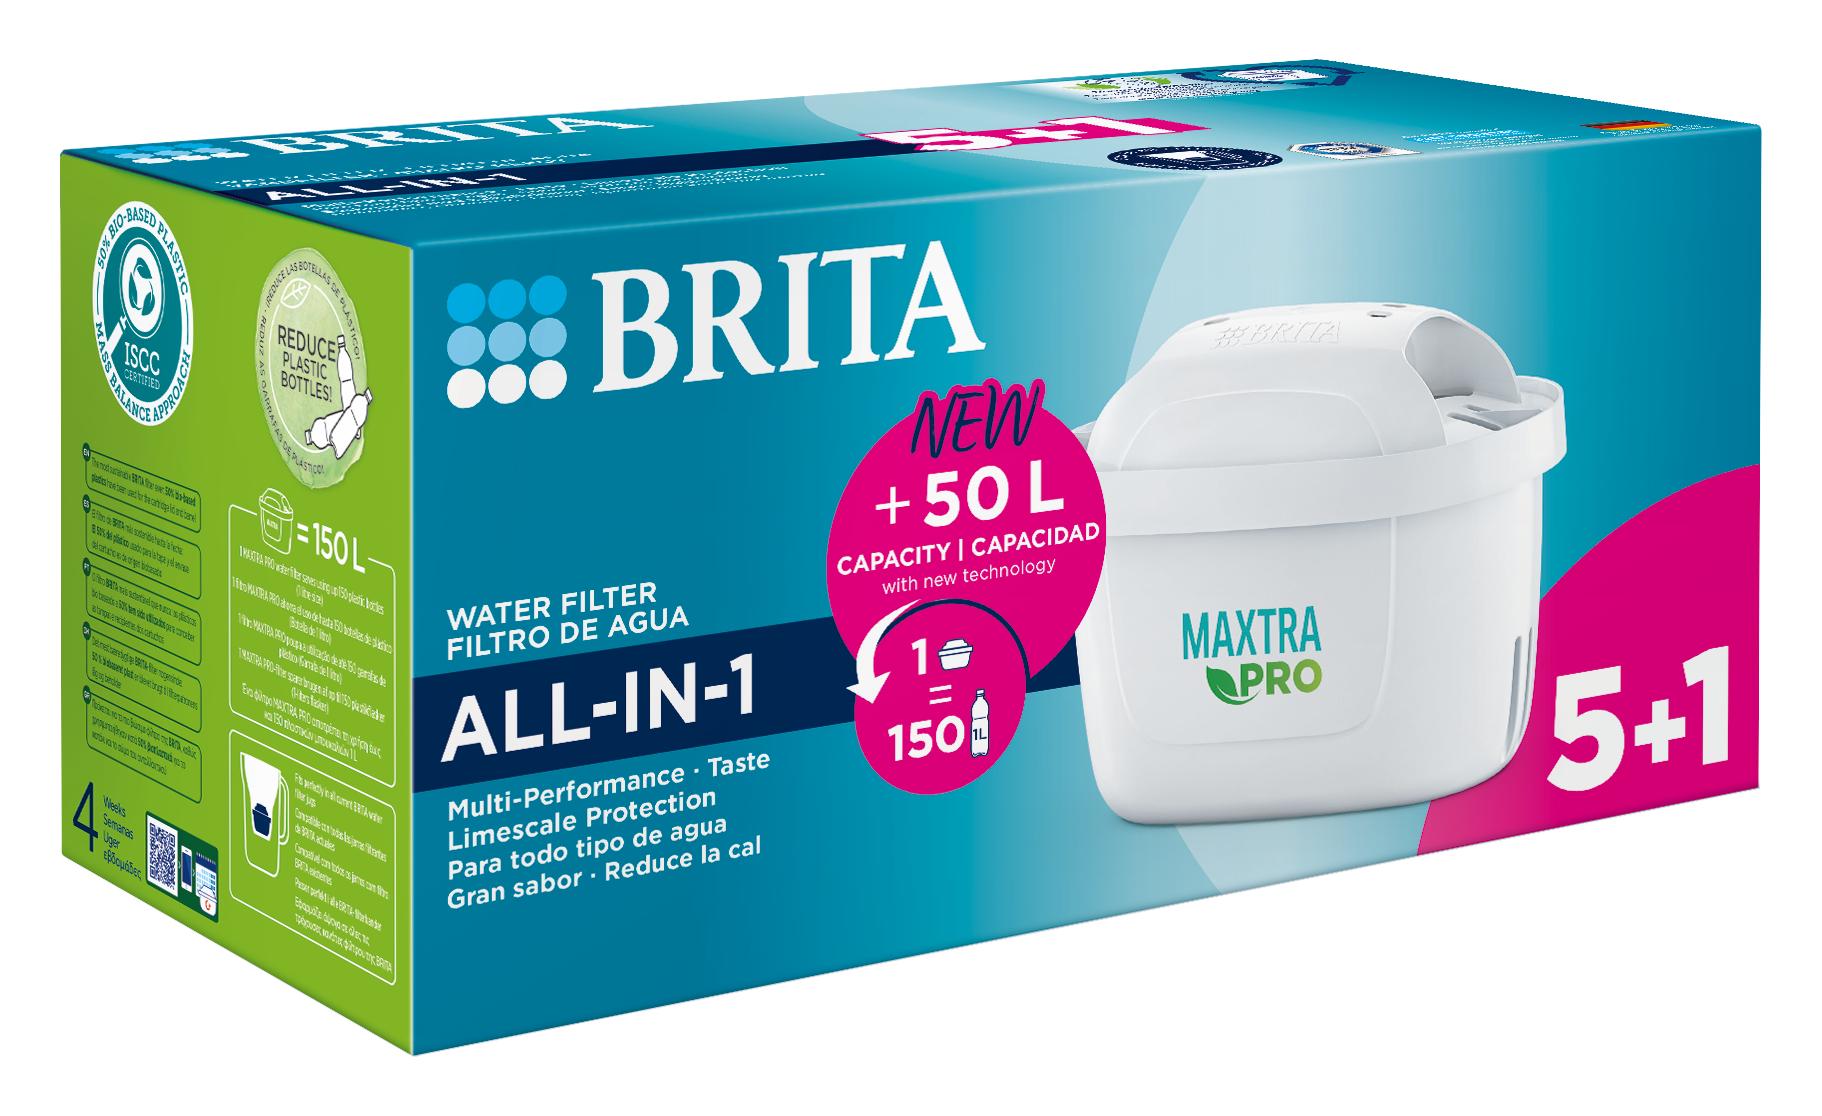 Filtro brita maxtra pro all-in-1 pack  5+1